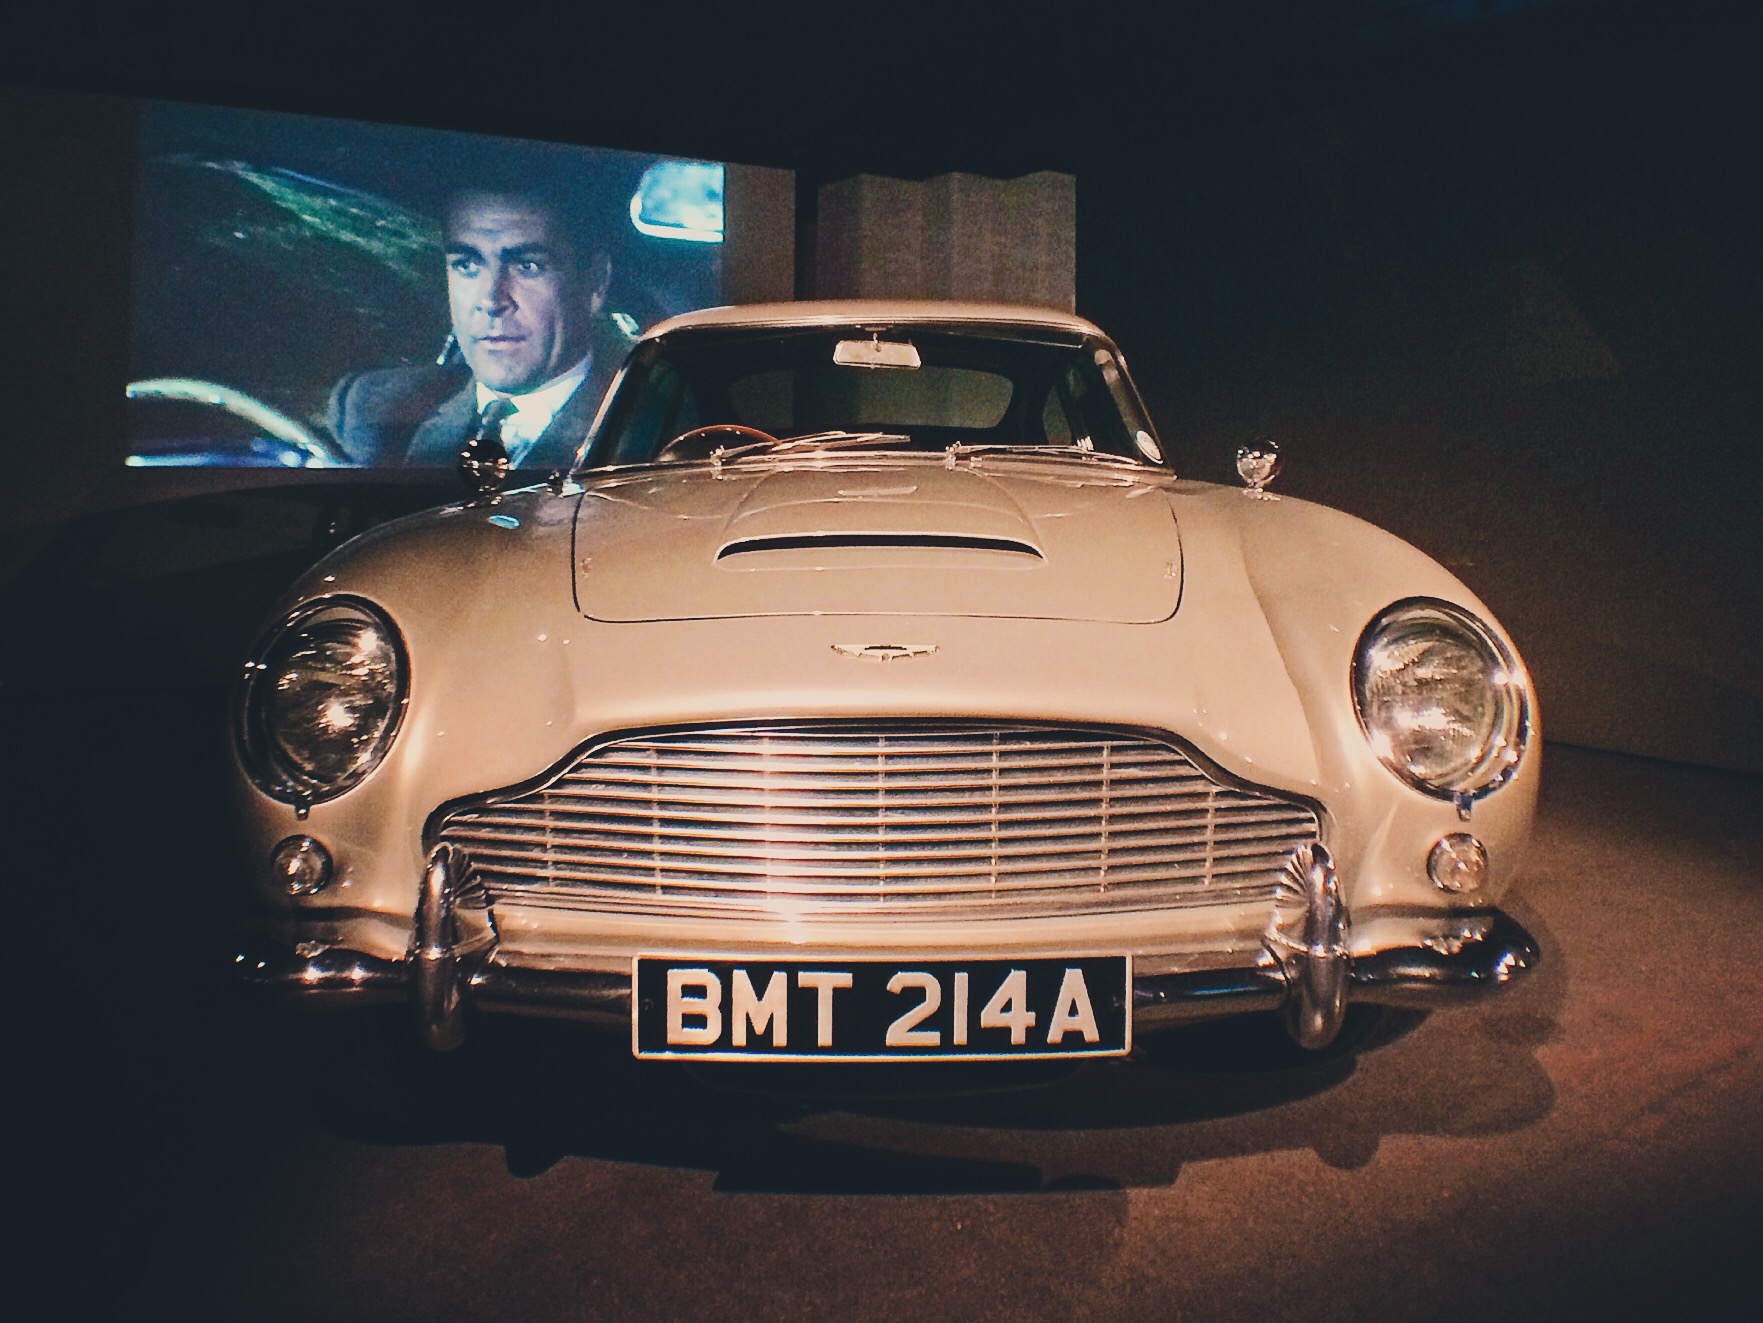 Aston Martin DB5: Usado por Sean Connery en "Goldfinger" (1964) y que reapareció con Daniel Craig en "Skyfall" (2012). Foto: Marco Gómez